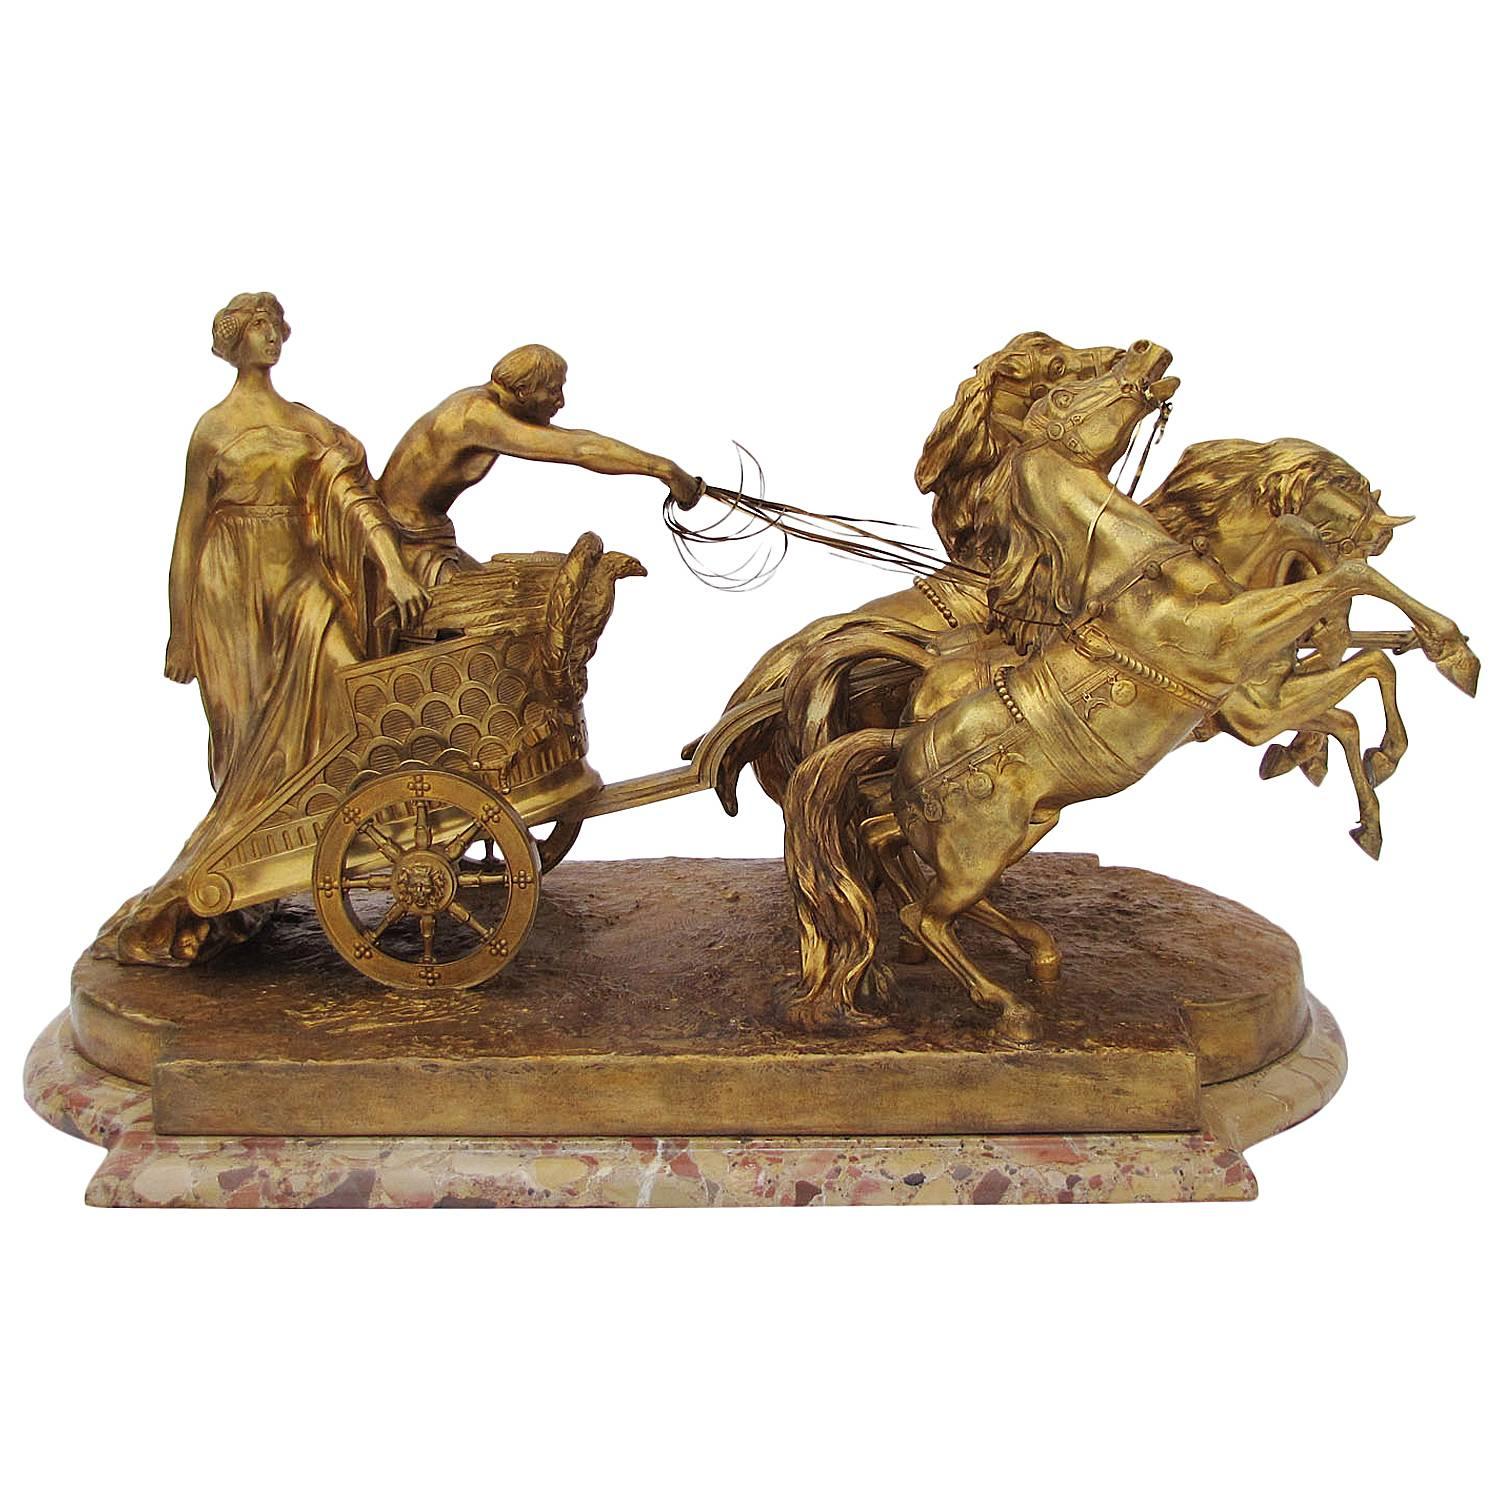 Luigi Belli - Italian 19th Century Gilt Bronze Quadriga Chariot with horses